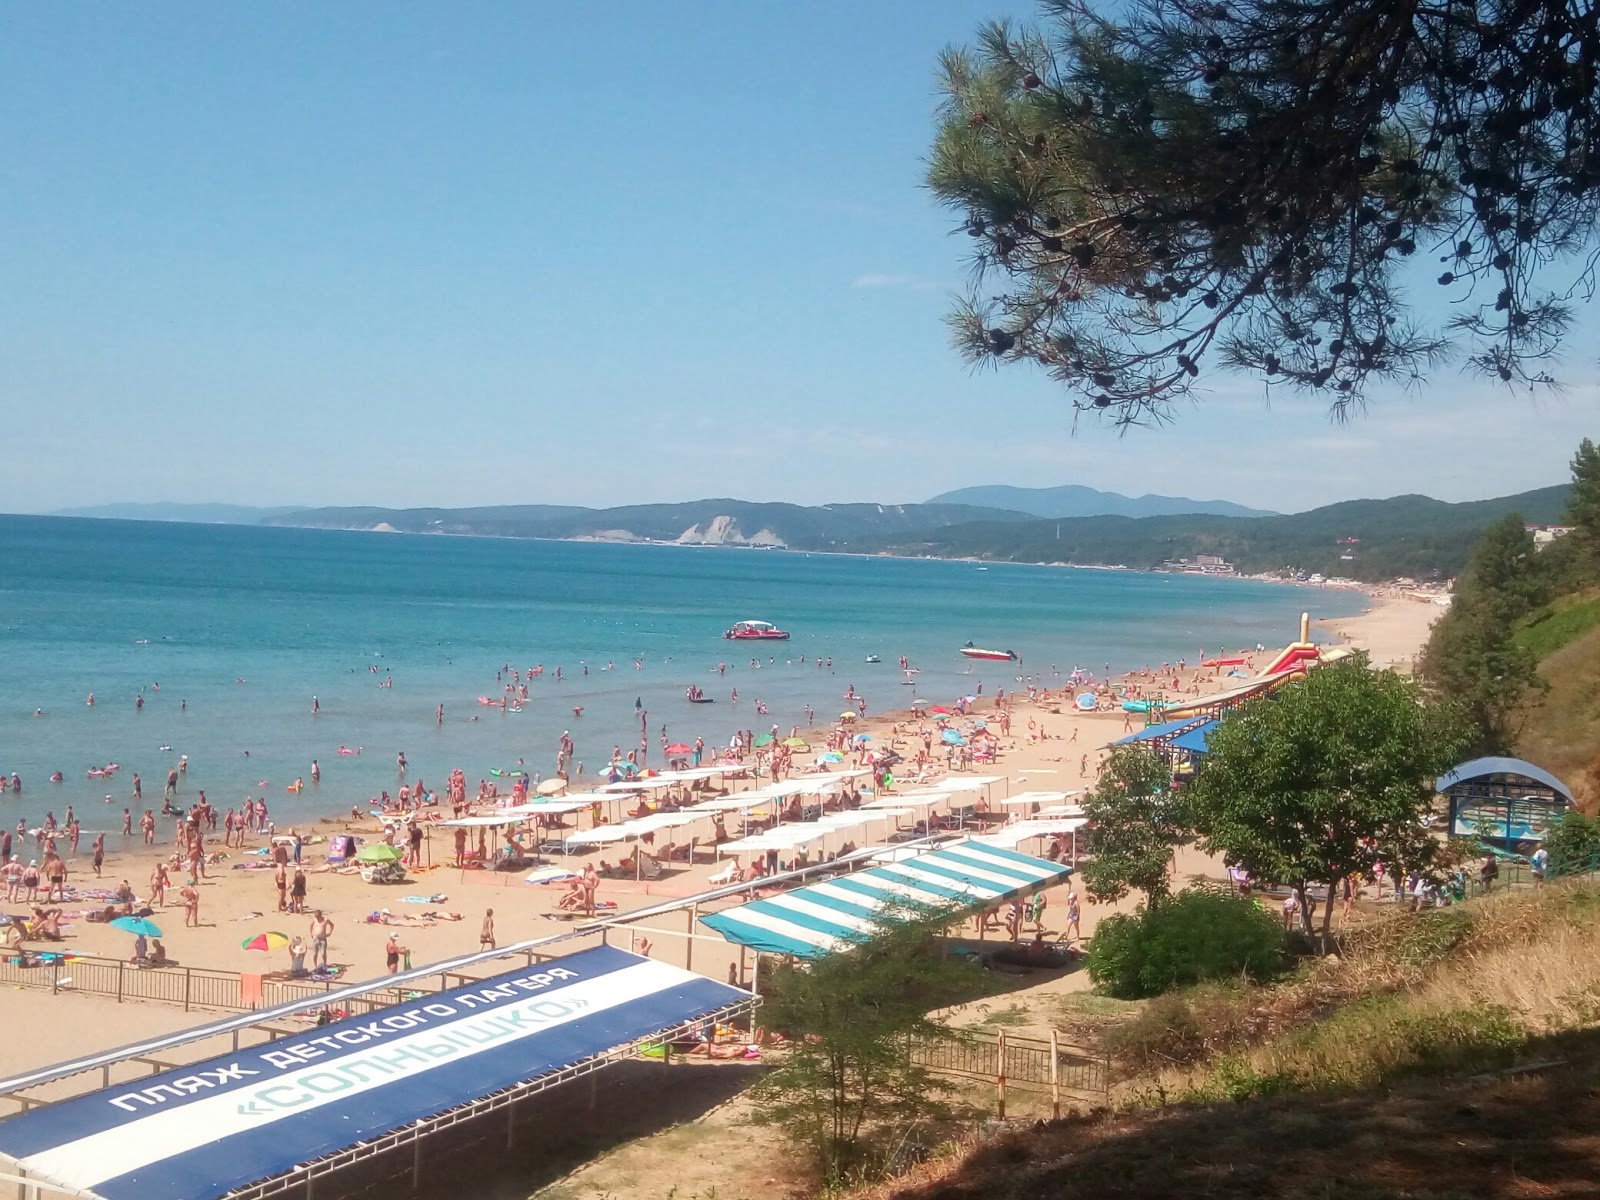 Foto de Orlyonok beach - recomendado para viajantes em família com crianças